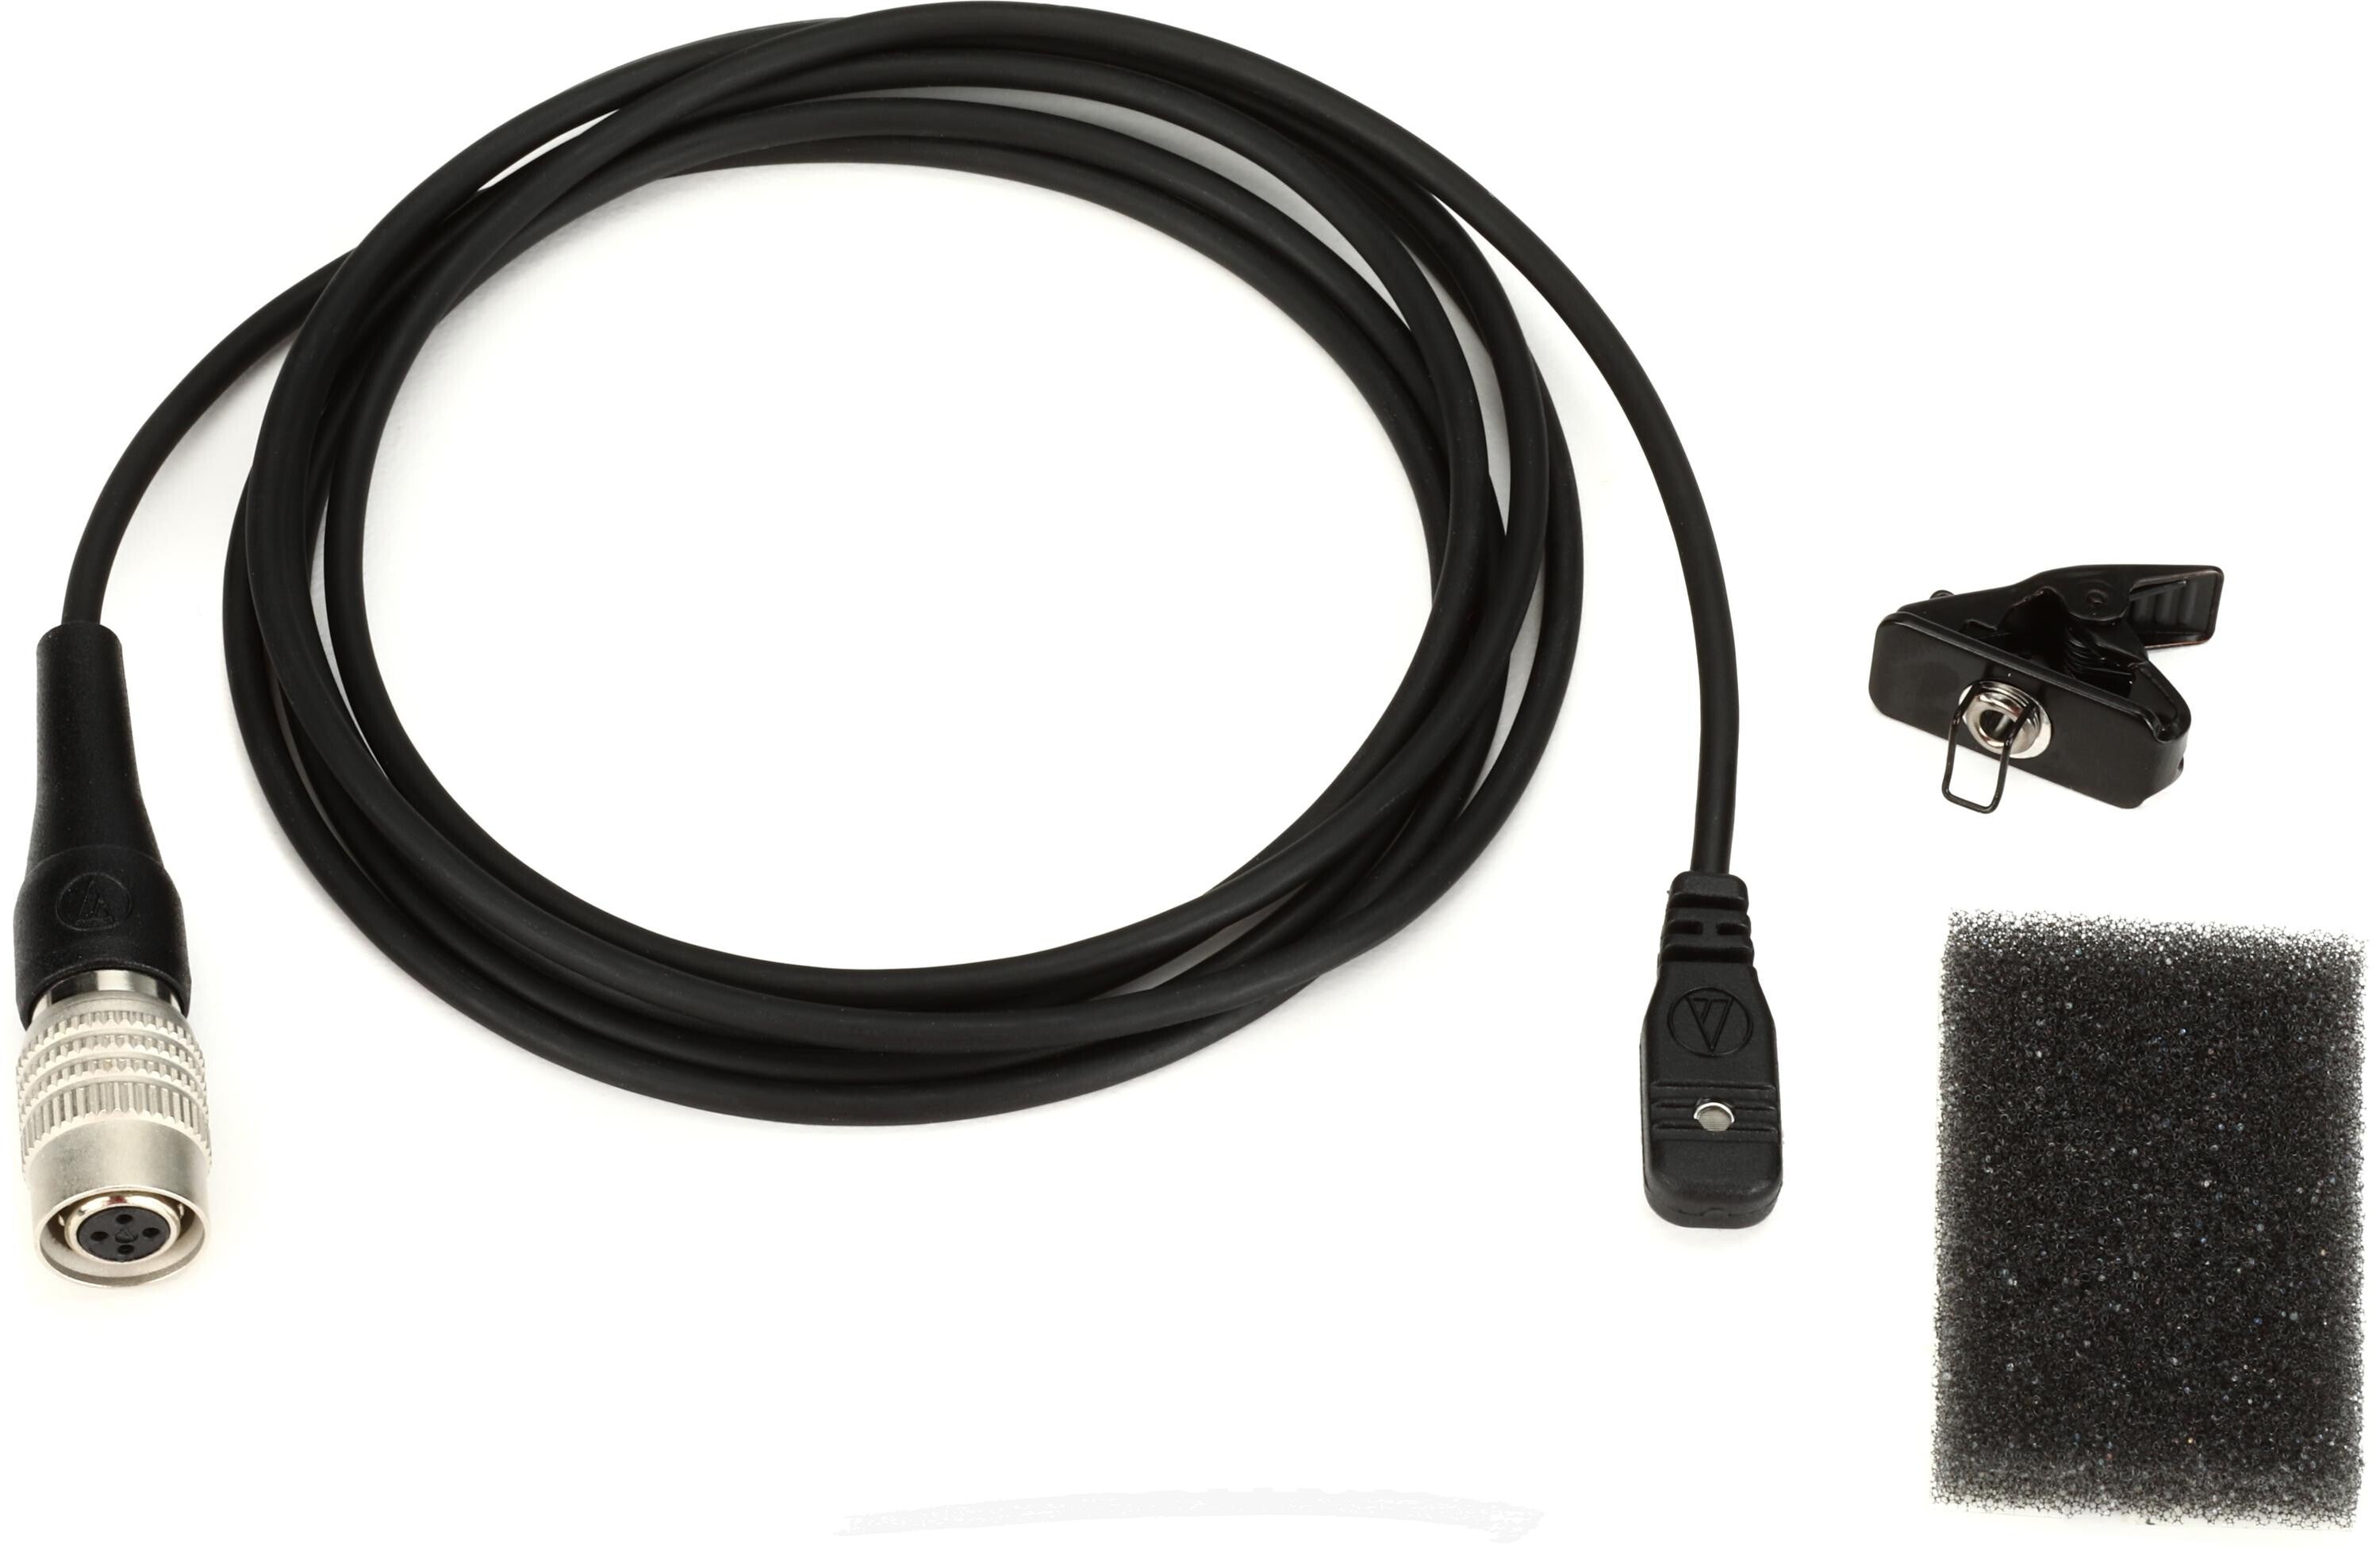 特別価格Audio Technica Lavalier Microphone Clip by Audio-Technica